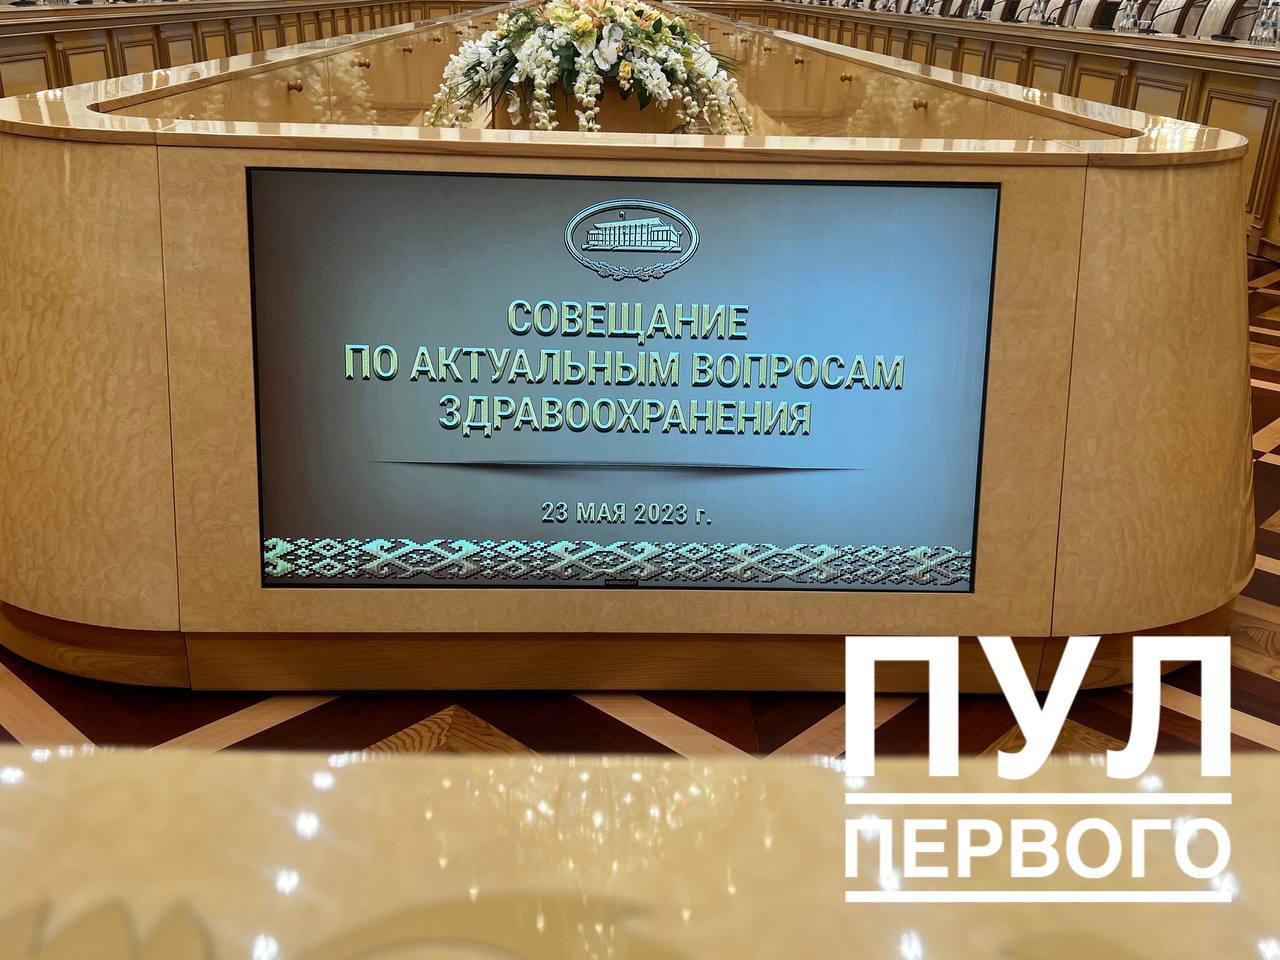 Президент Беларуси подписал распоряжение "О повышении эффективности работы системы здравоохранения"